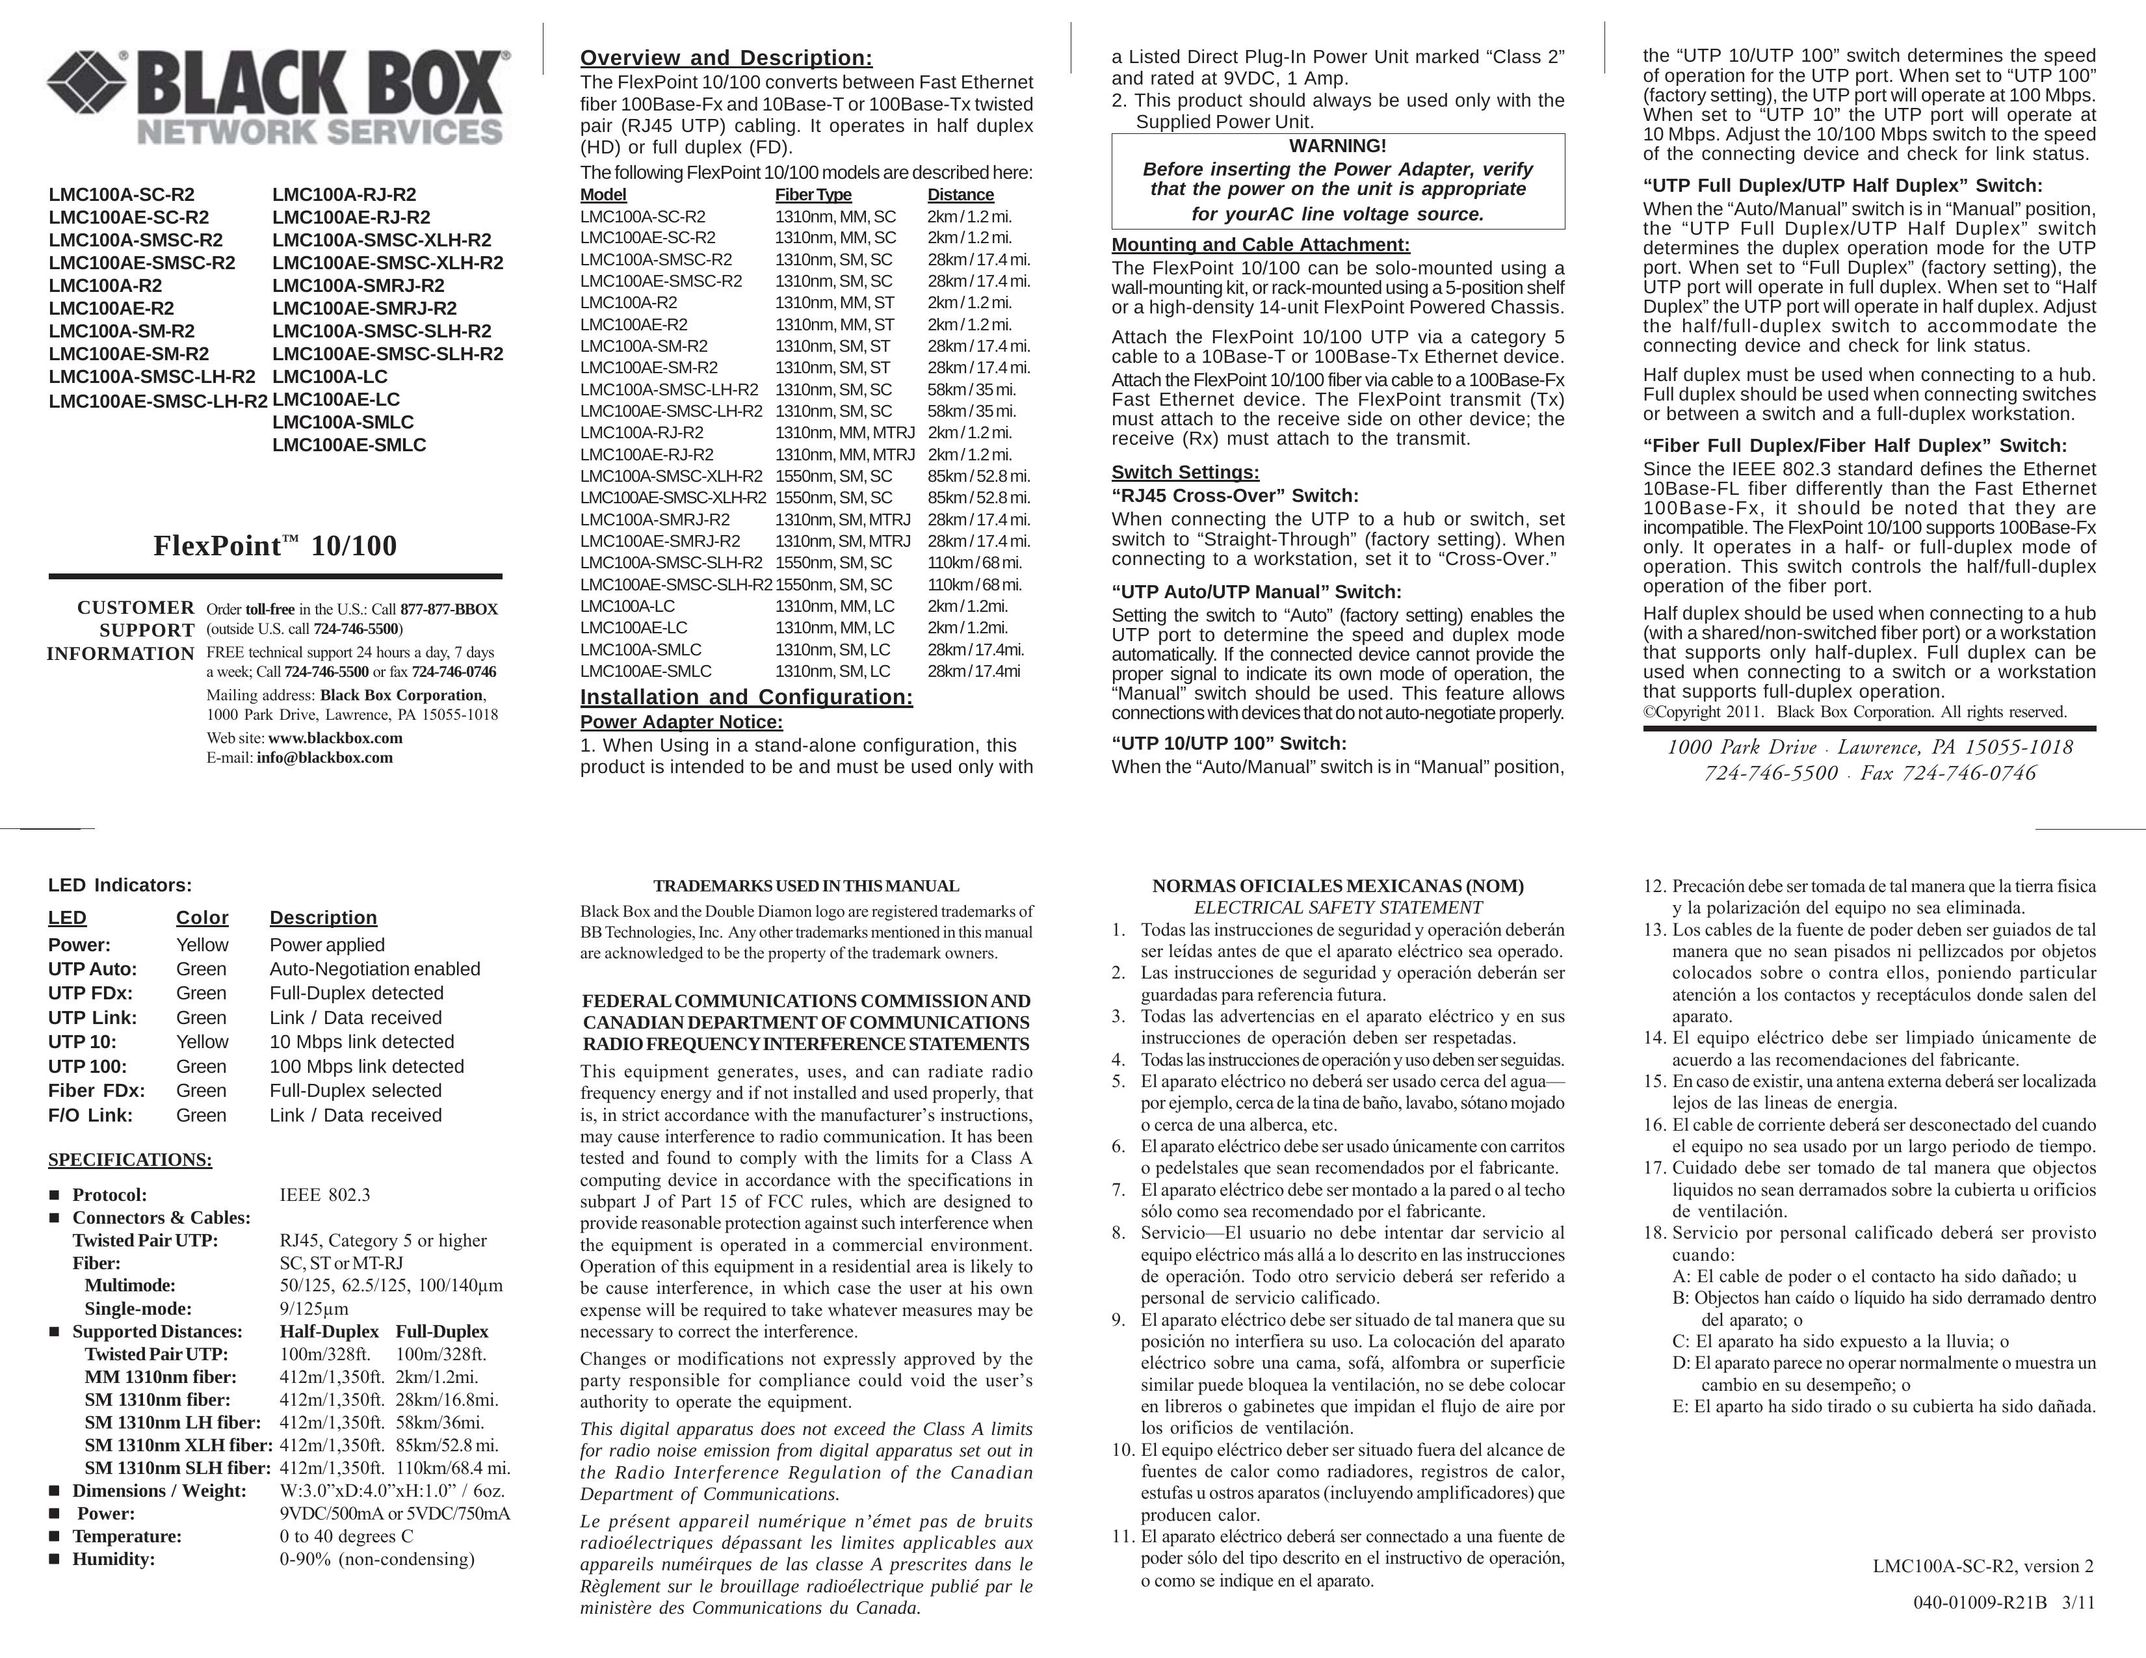 Black Box LMC100AE-SMSC-SLH-R21550nm Network Cables User Manual